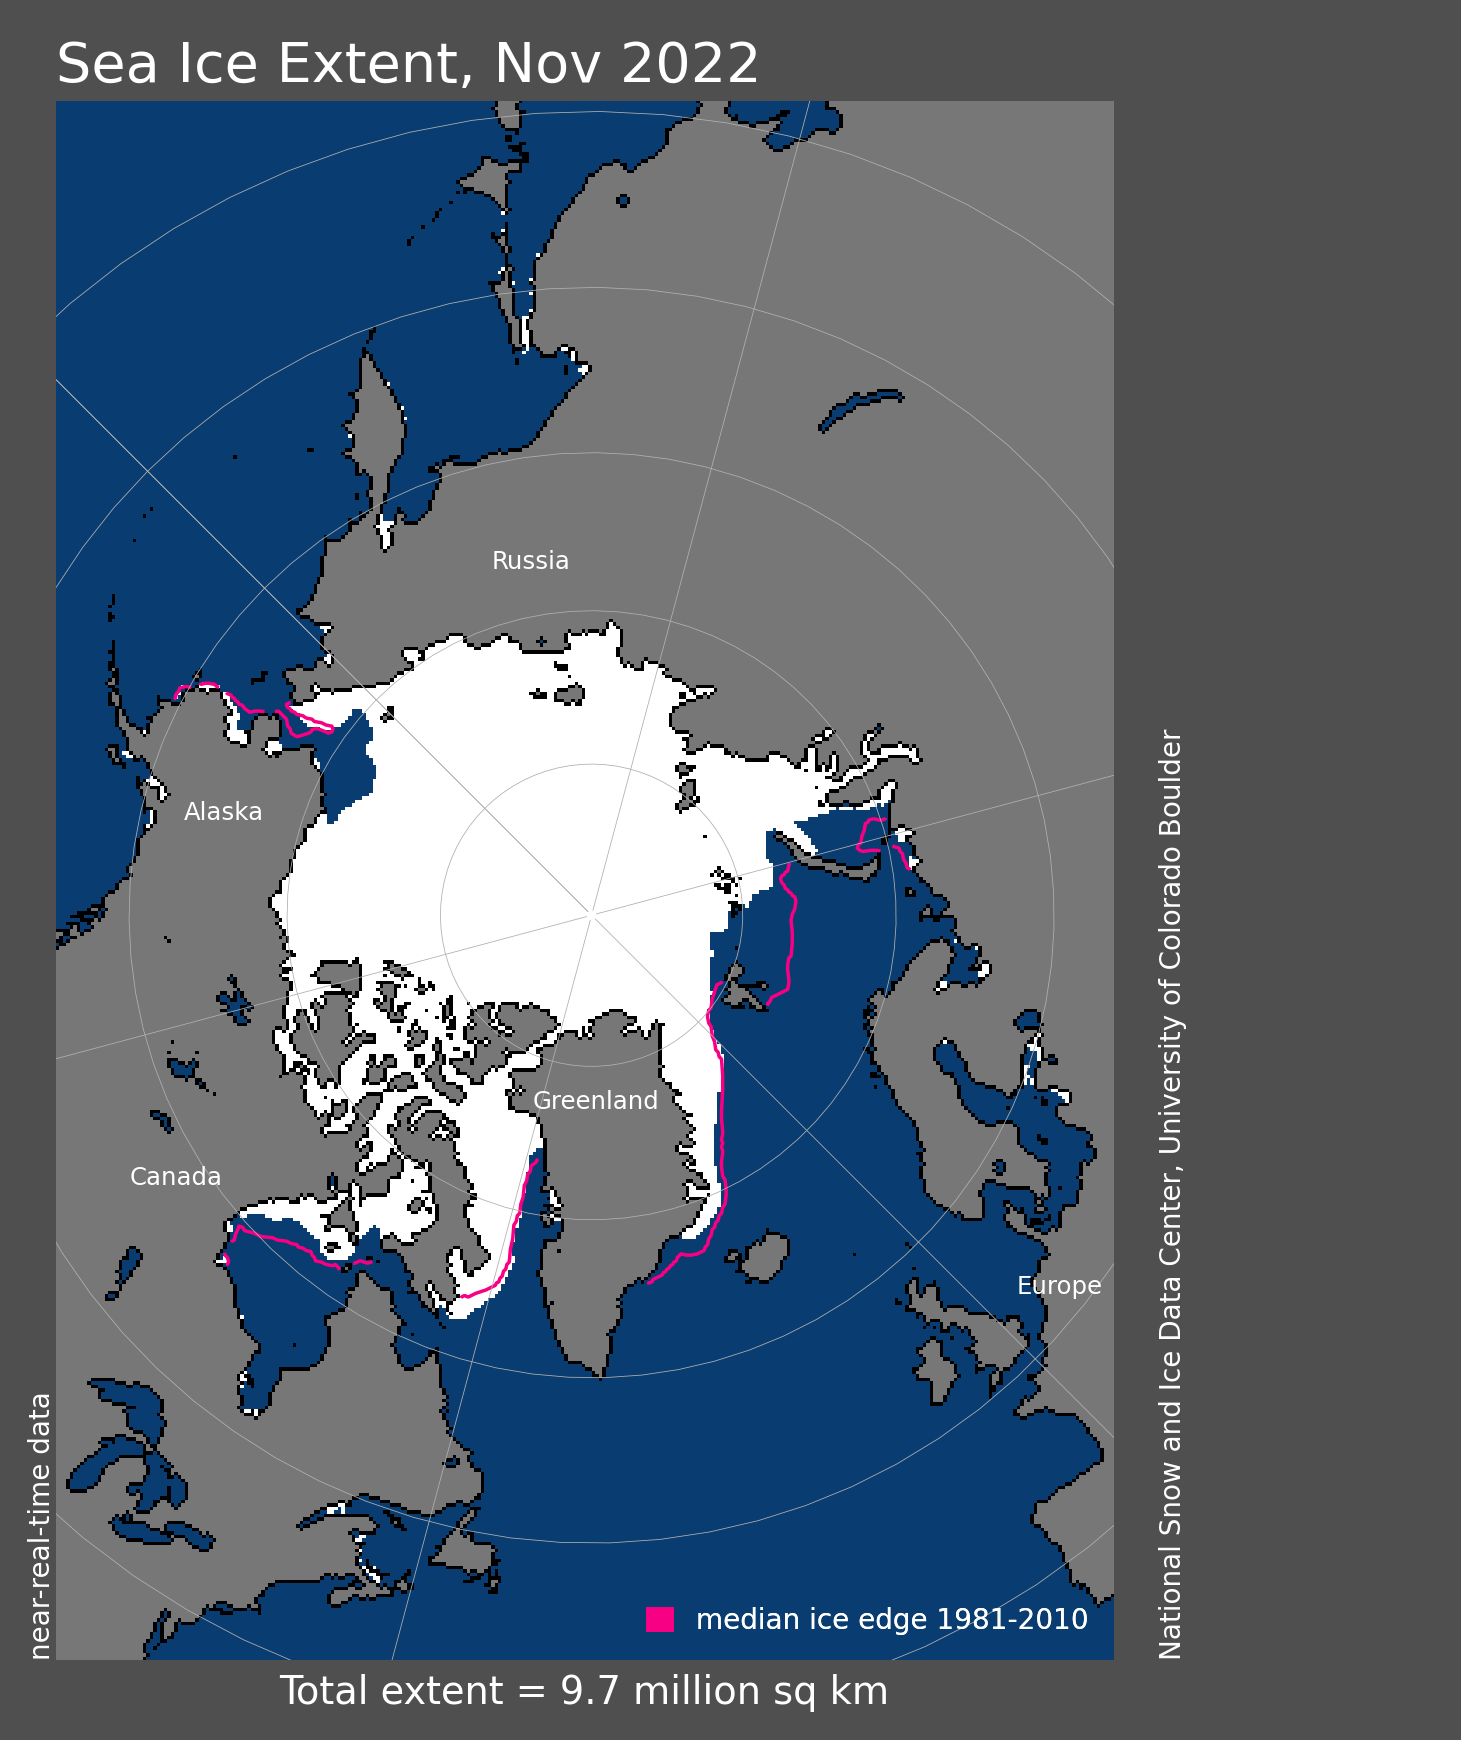 Arctic-sea-ice-extent-growth-winter-season-antarctica-abrupt-decline-sf-nov22